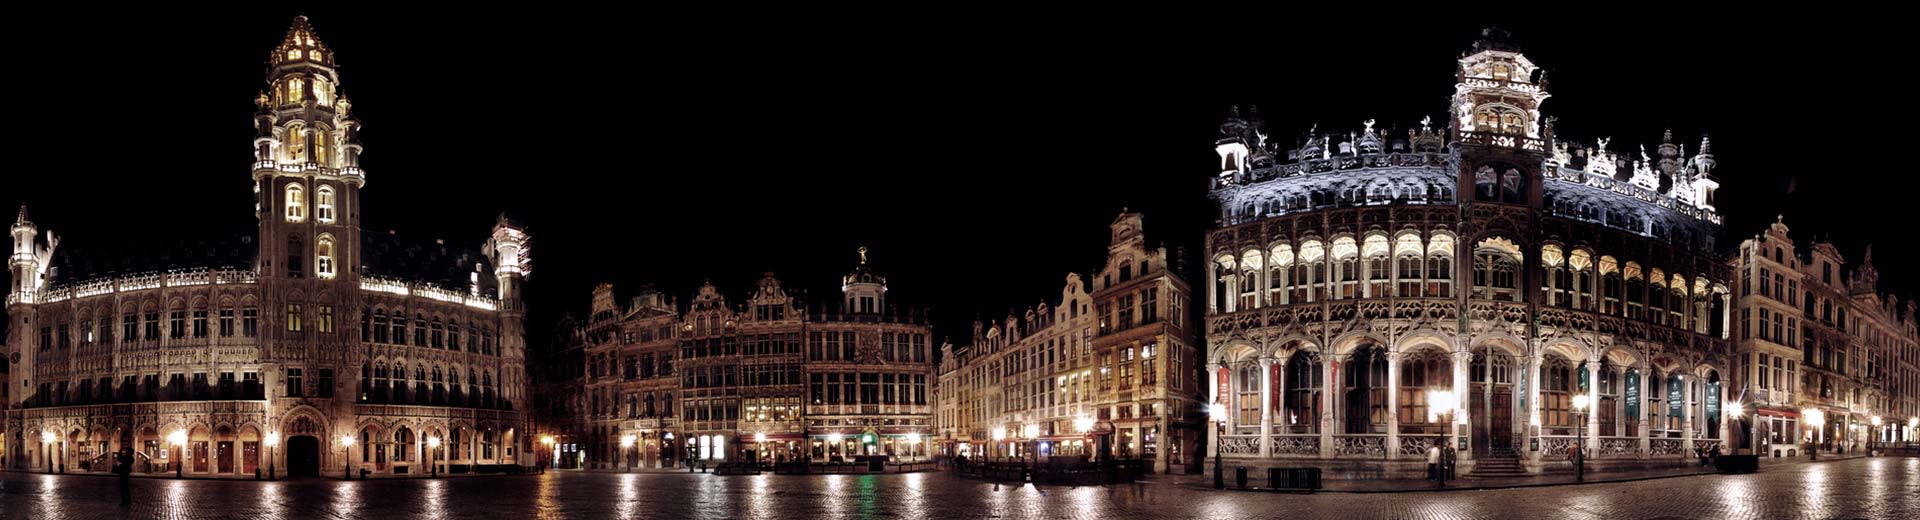 Centre-ville de Bruxelles la nuit avec la mairie en vue.